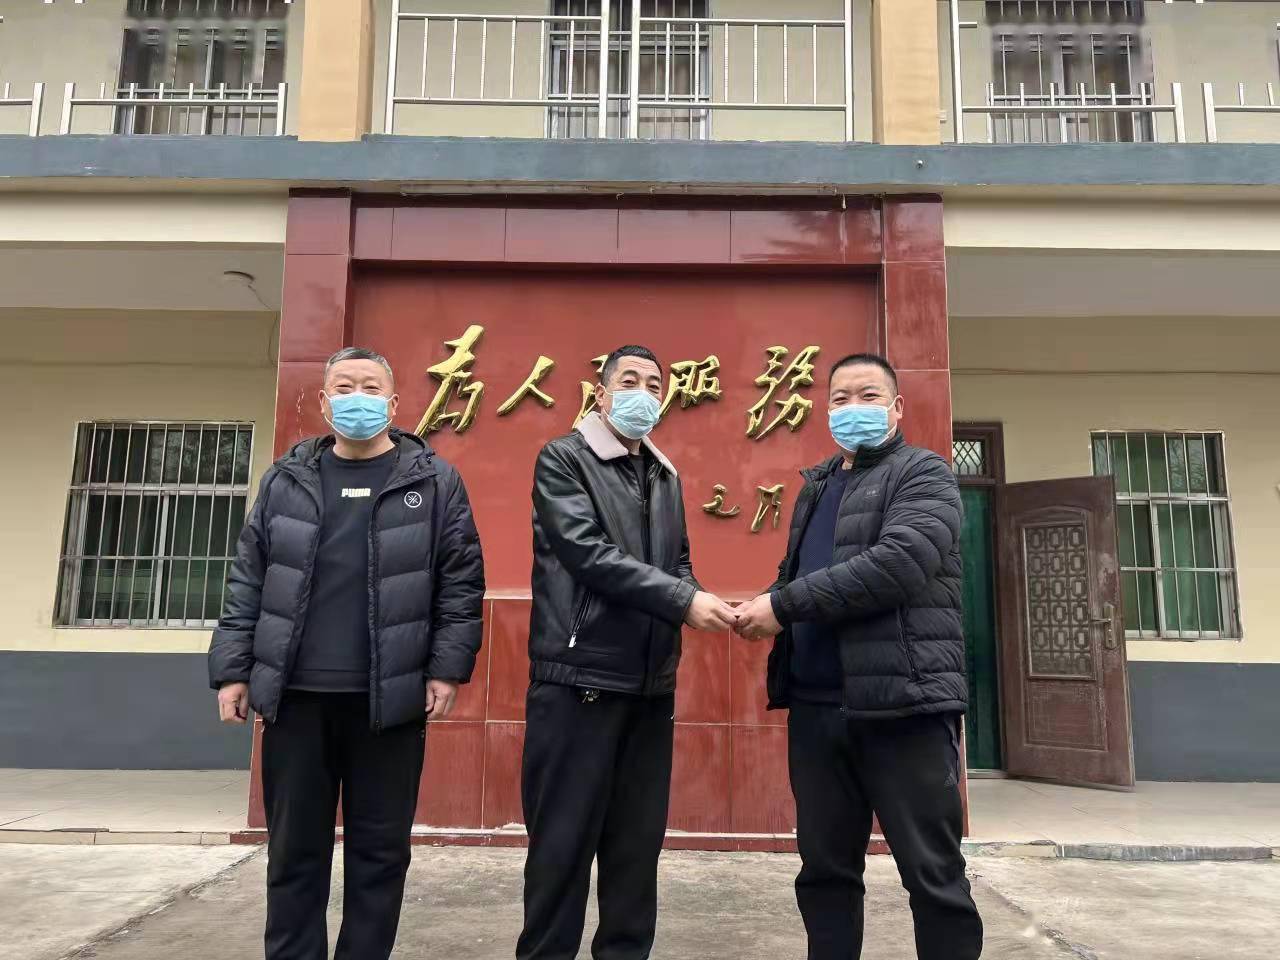 1月10日,修武县七贤镇孟村党支部书记张向前走进镇政府办公室,捐款